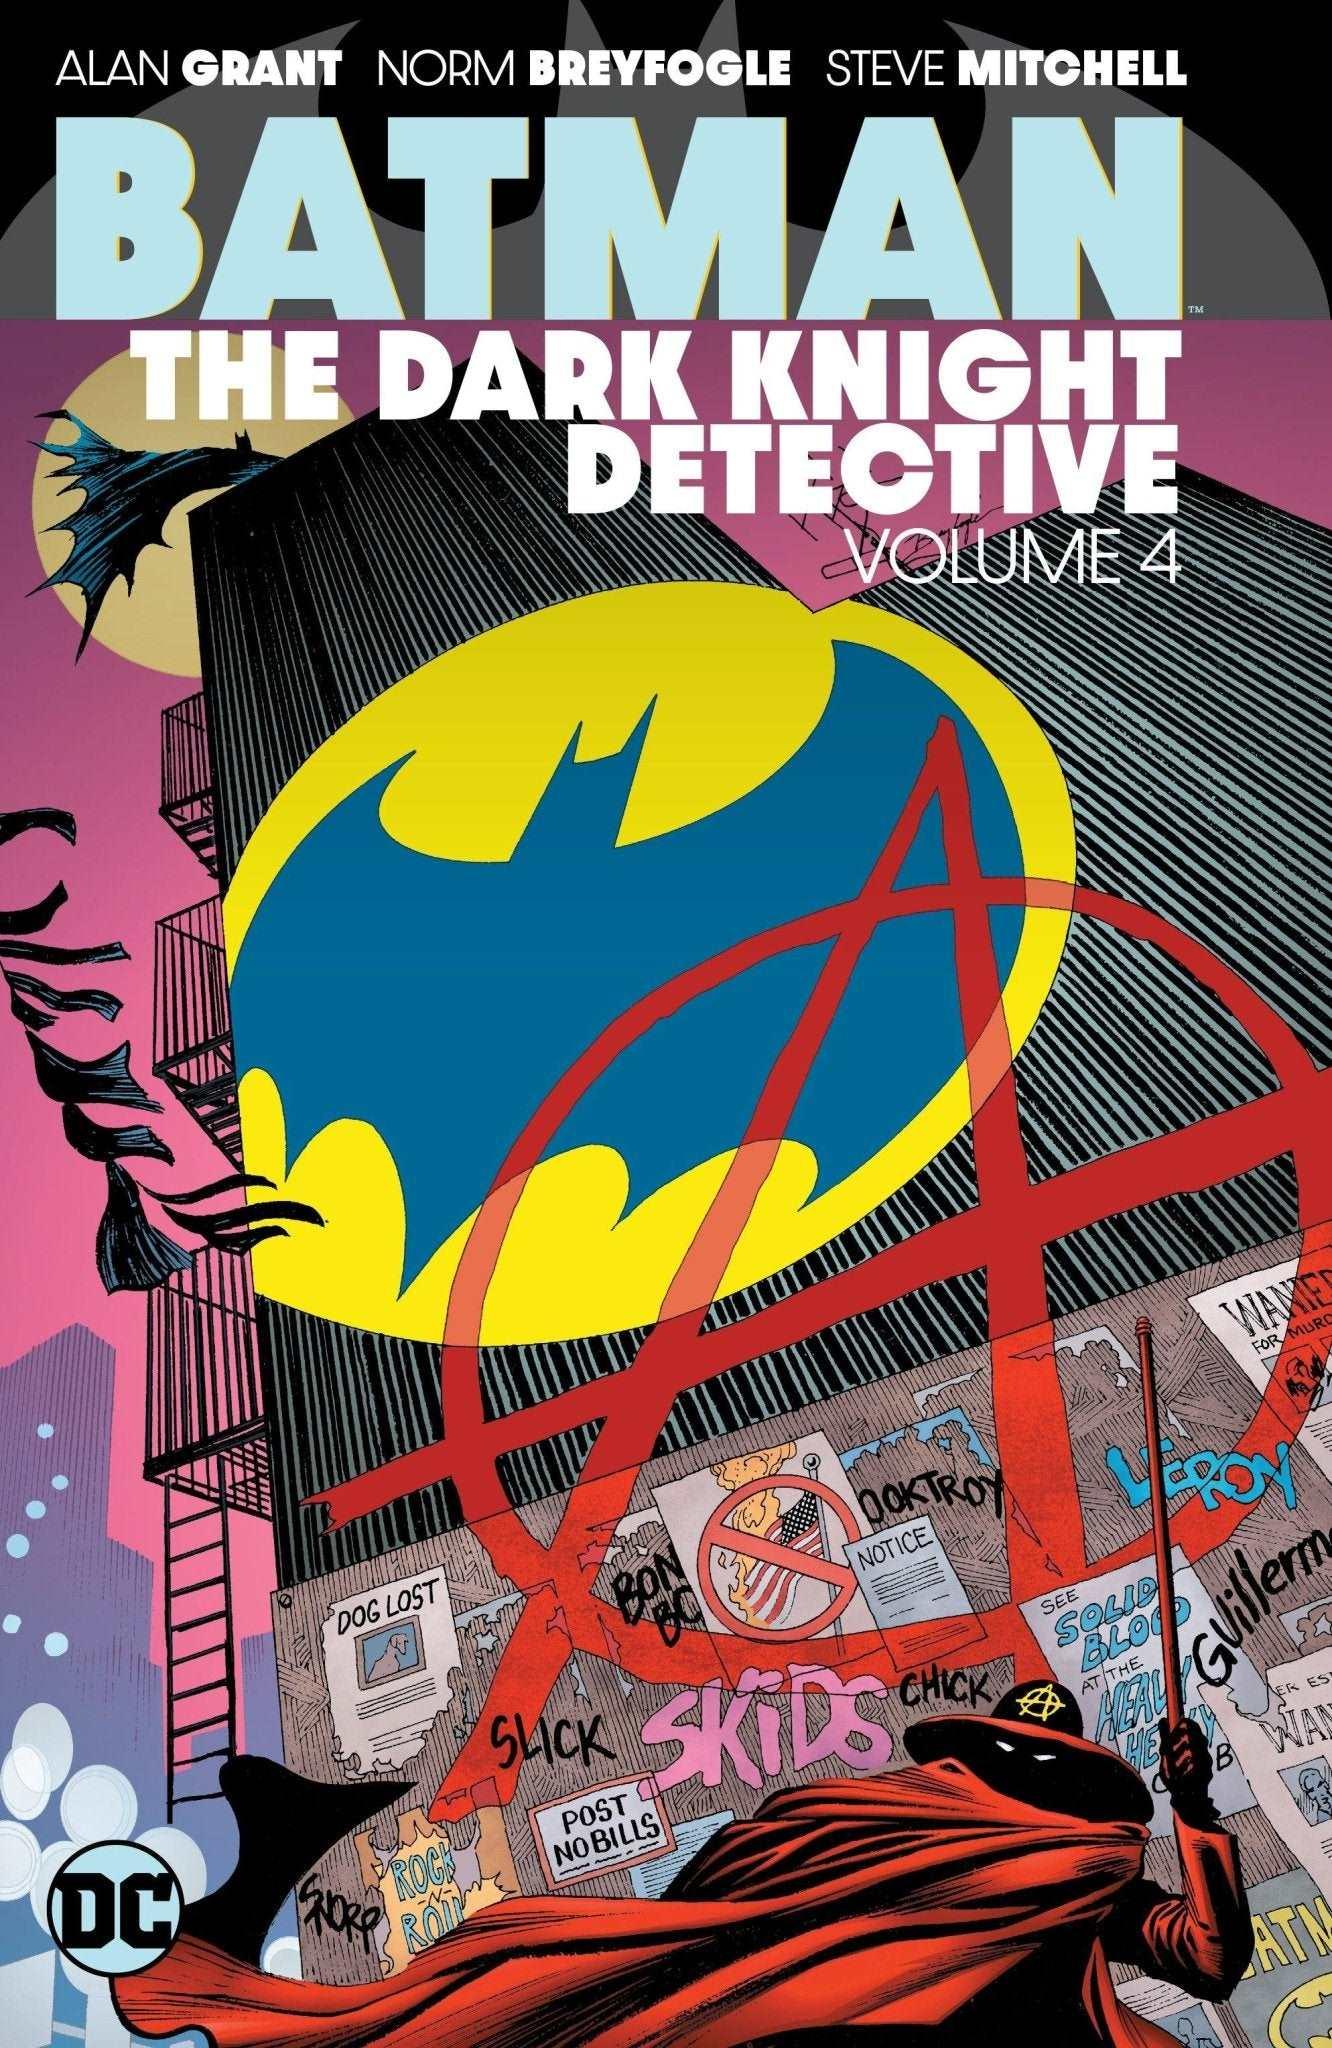 BATMAN THE DARK KNIGHT DETECTIVE VOL 04 TP (SHIPS 01-19-21) - PCKComics.com